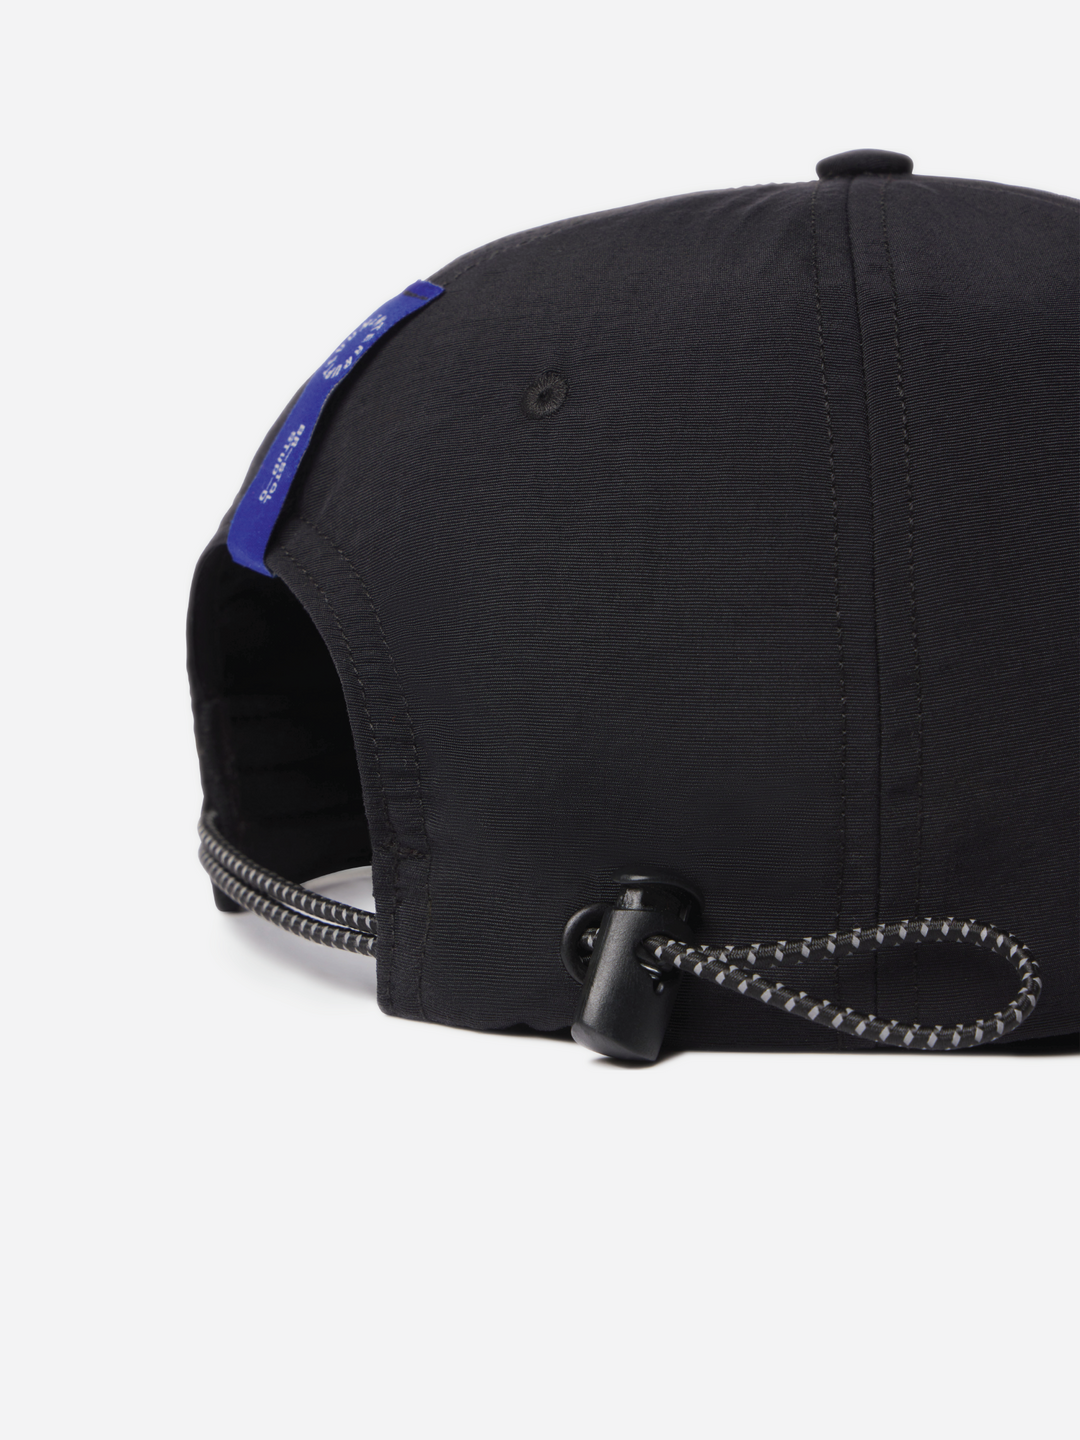 Bristol Studio X UN 'Aspire Athlete' Black Bungee Hat